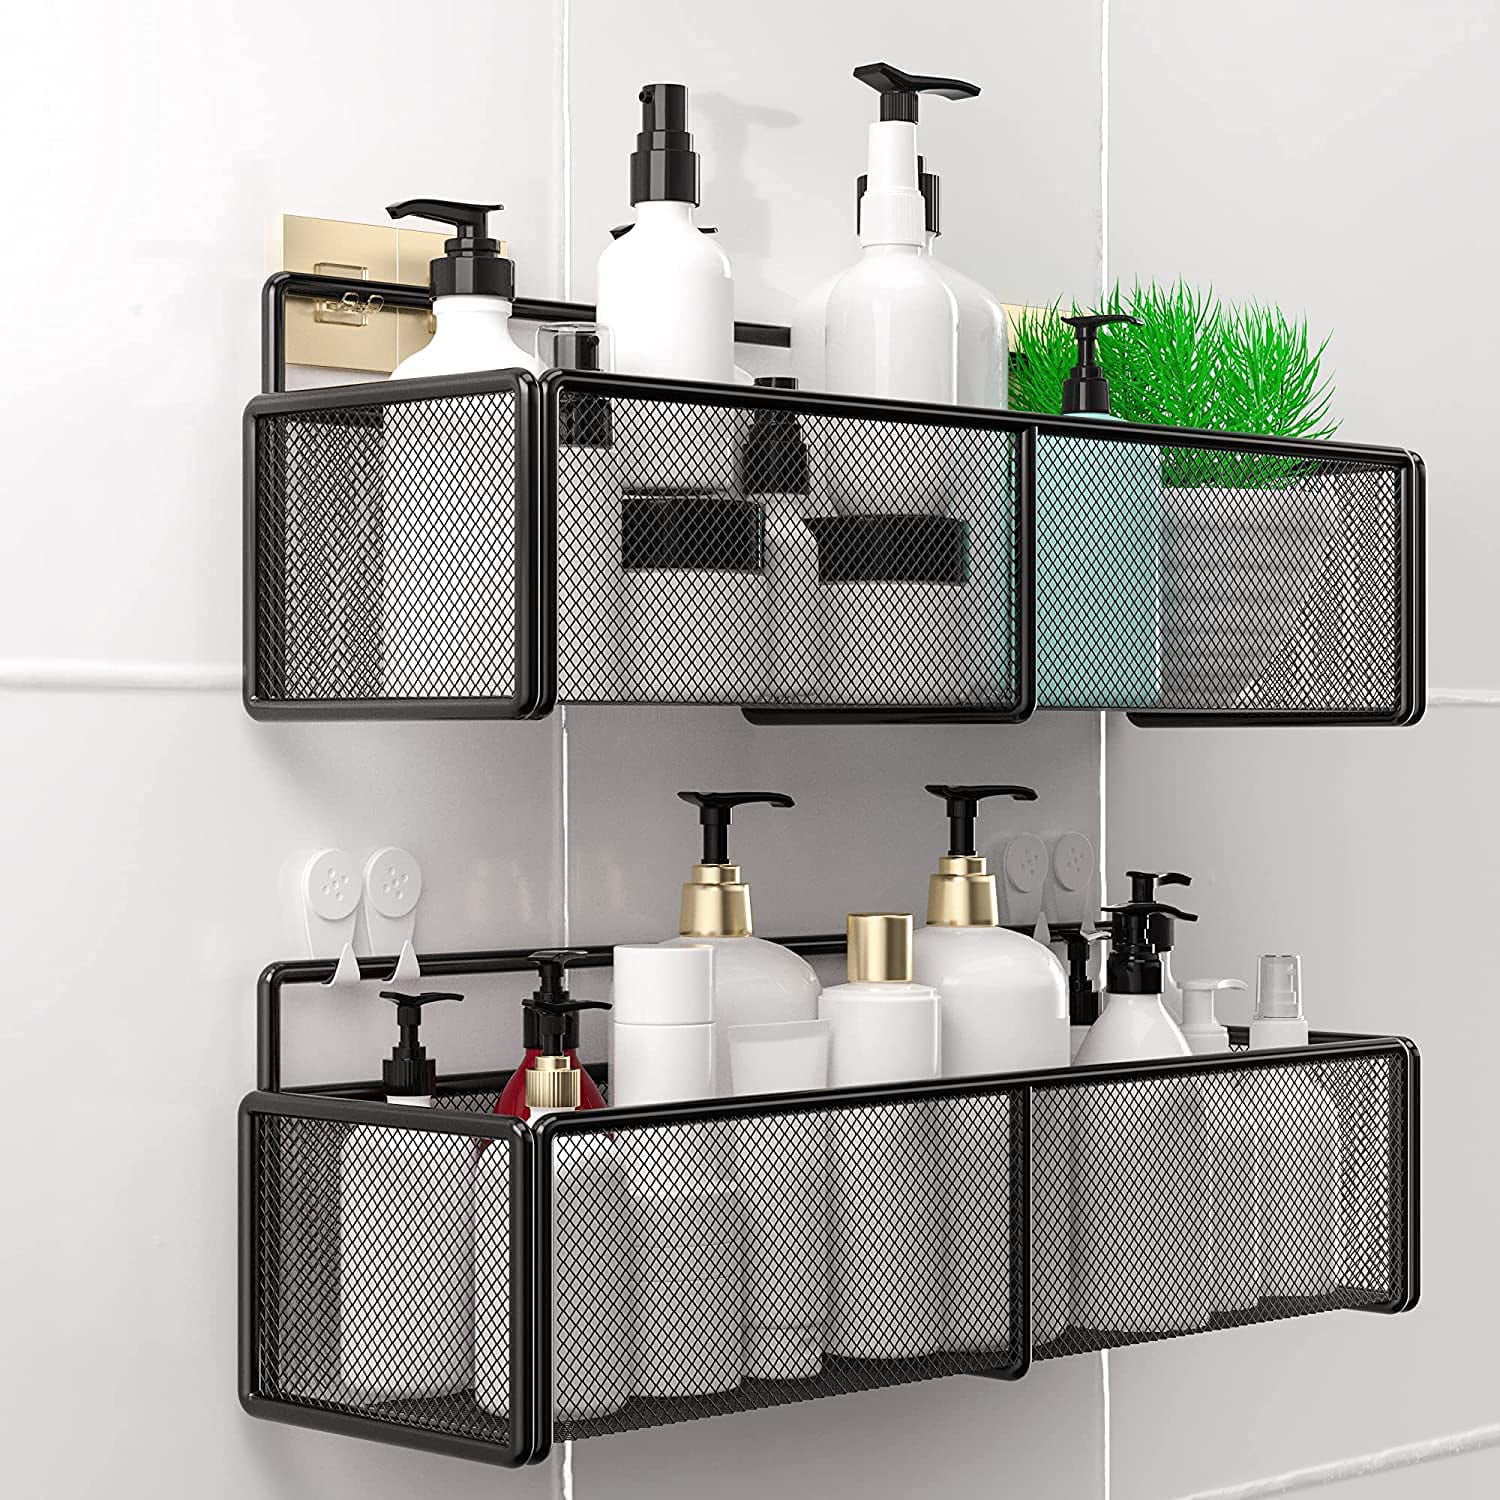 Black Shower Caddy Home Kitchen Bathroom shower Shelf Storage Organiser Rack 